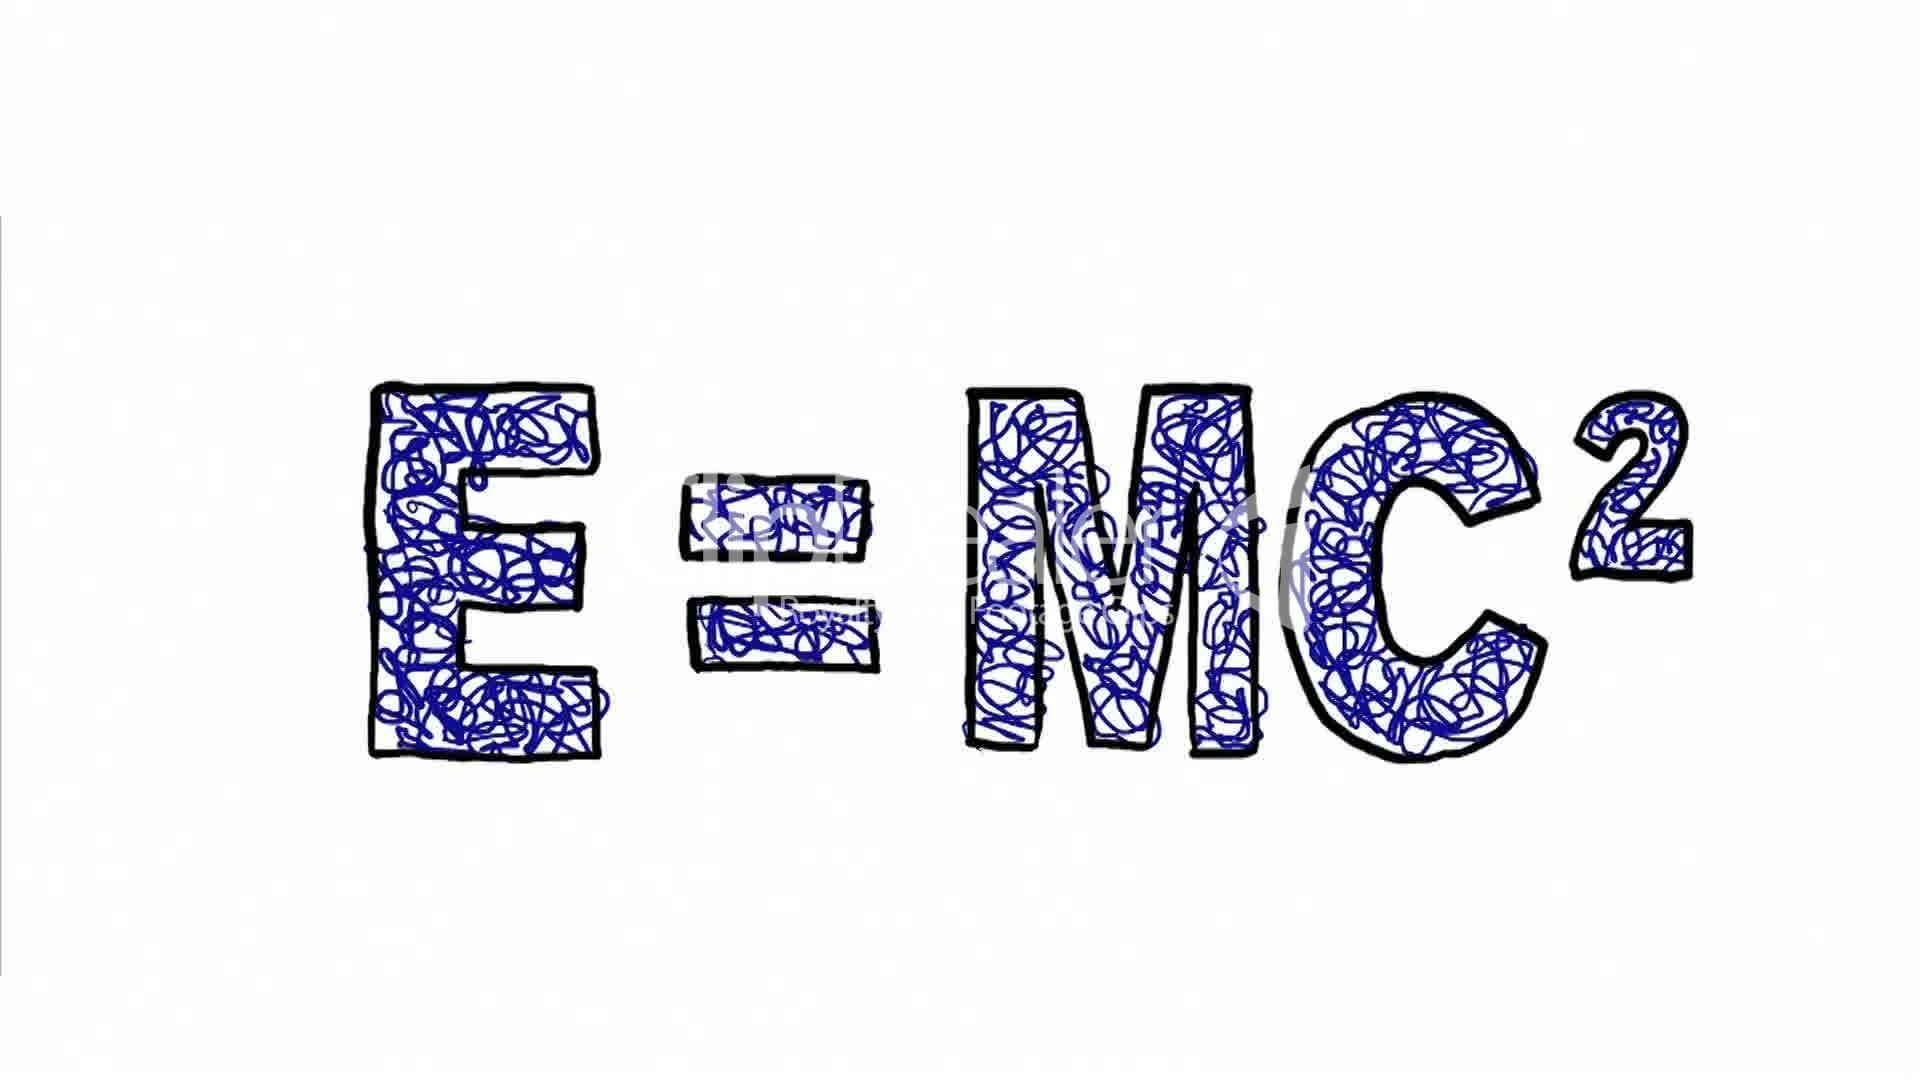 Е равно мс. Эйнштейна е мс2. E0 mc2 формула. Формула е мс2. E=mc².